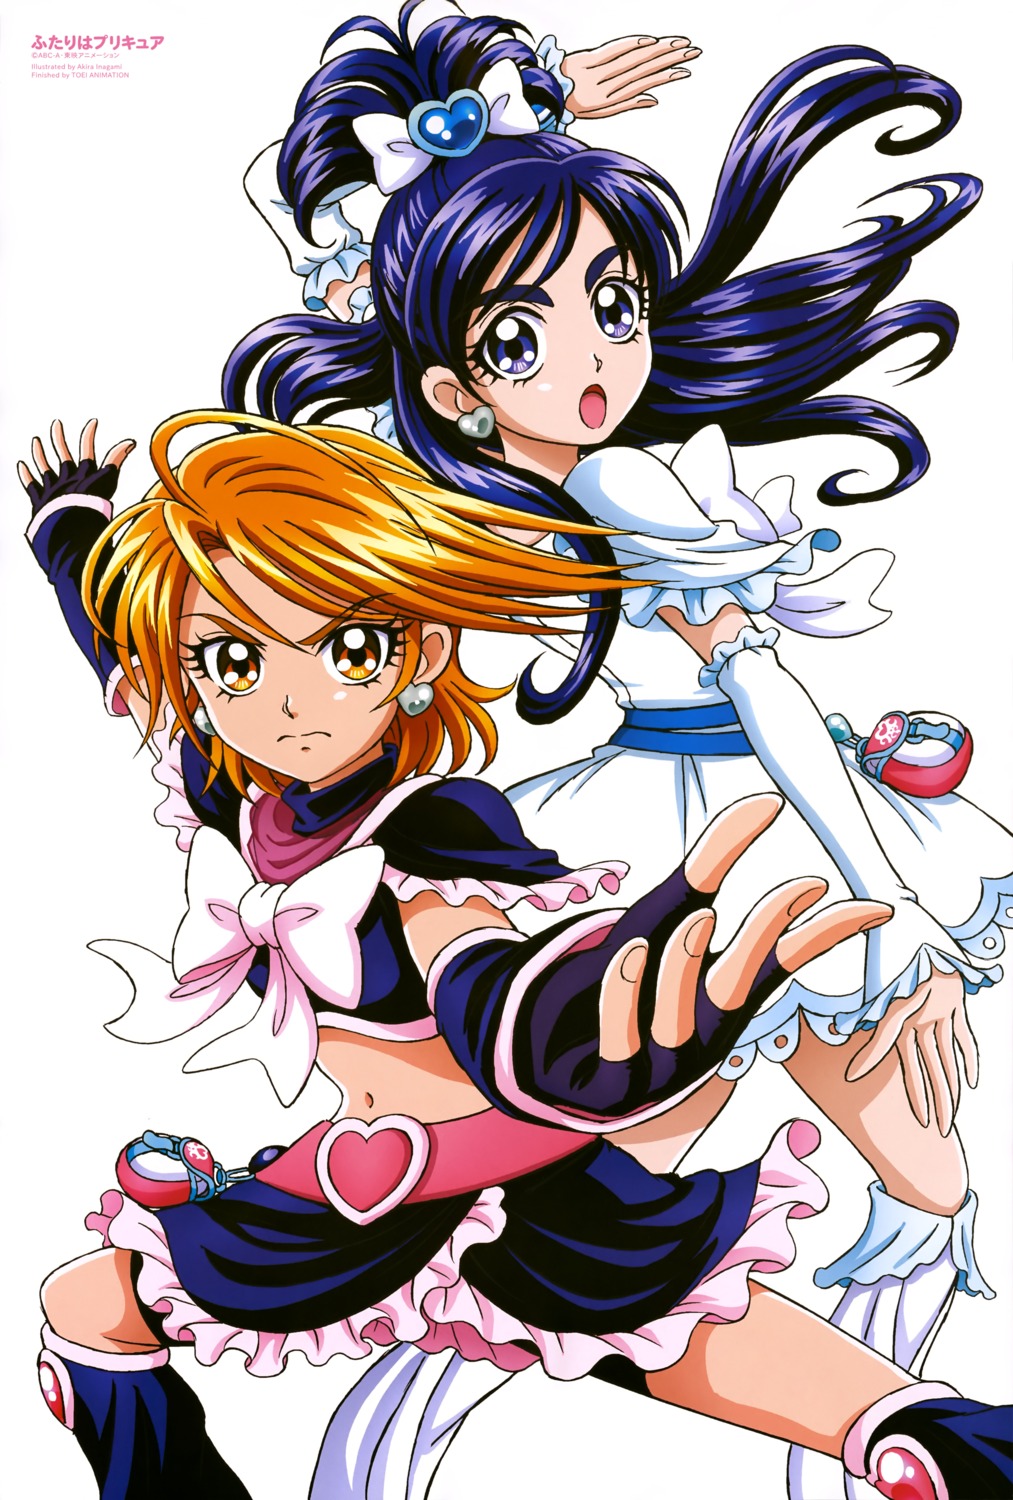 Inagami Akira Futari Wa Pretty Cure Pretty Cure Misumi Nagisa Yukishiro Honoka Bike Shorts Dress 4515